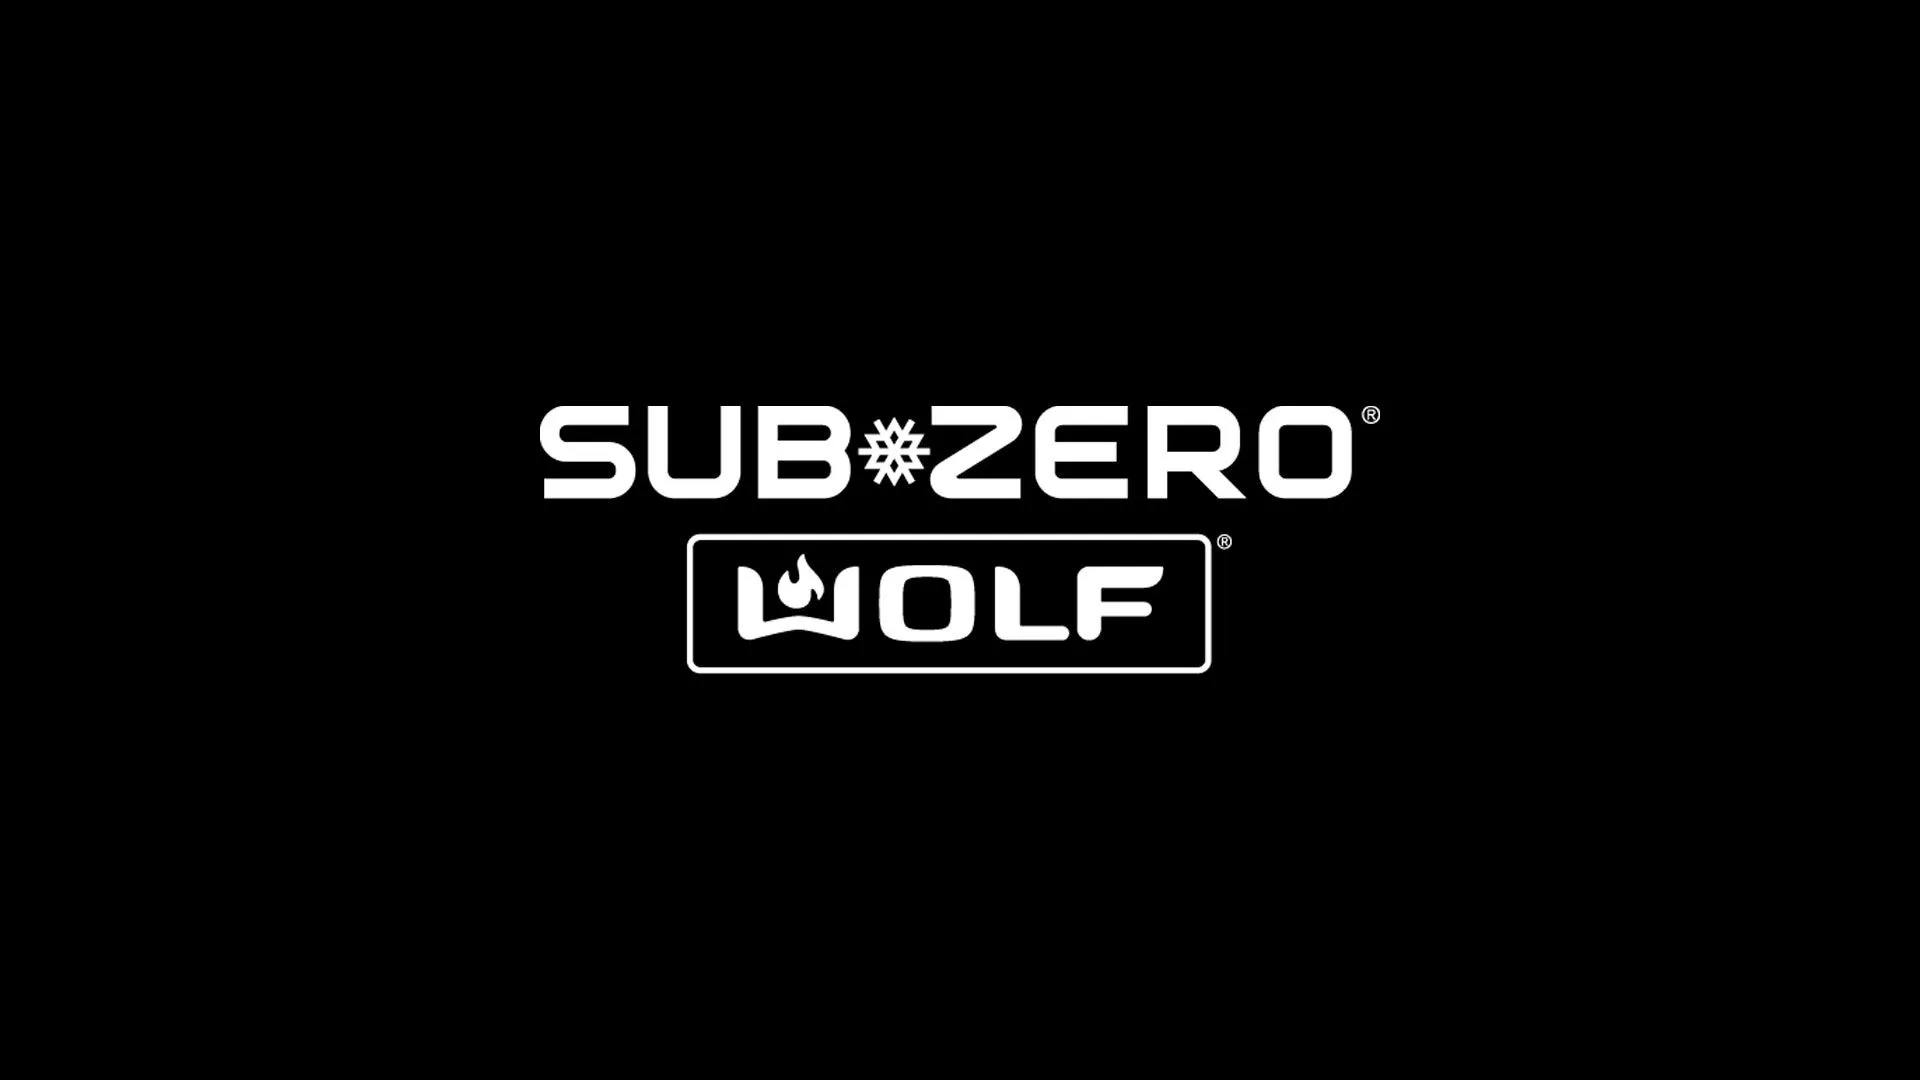 Subzero Wolf